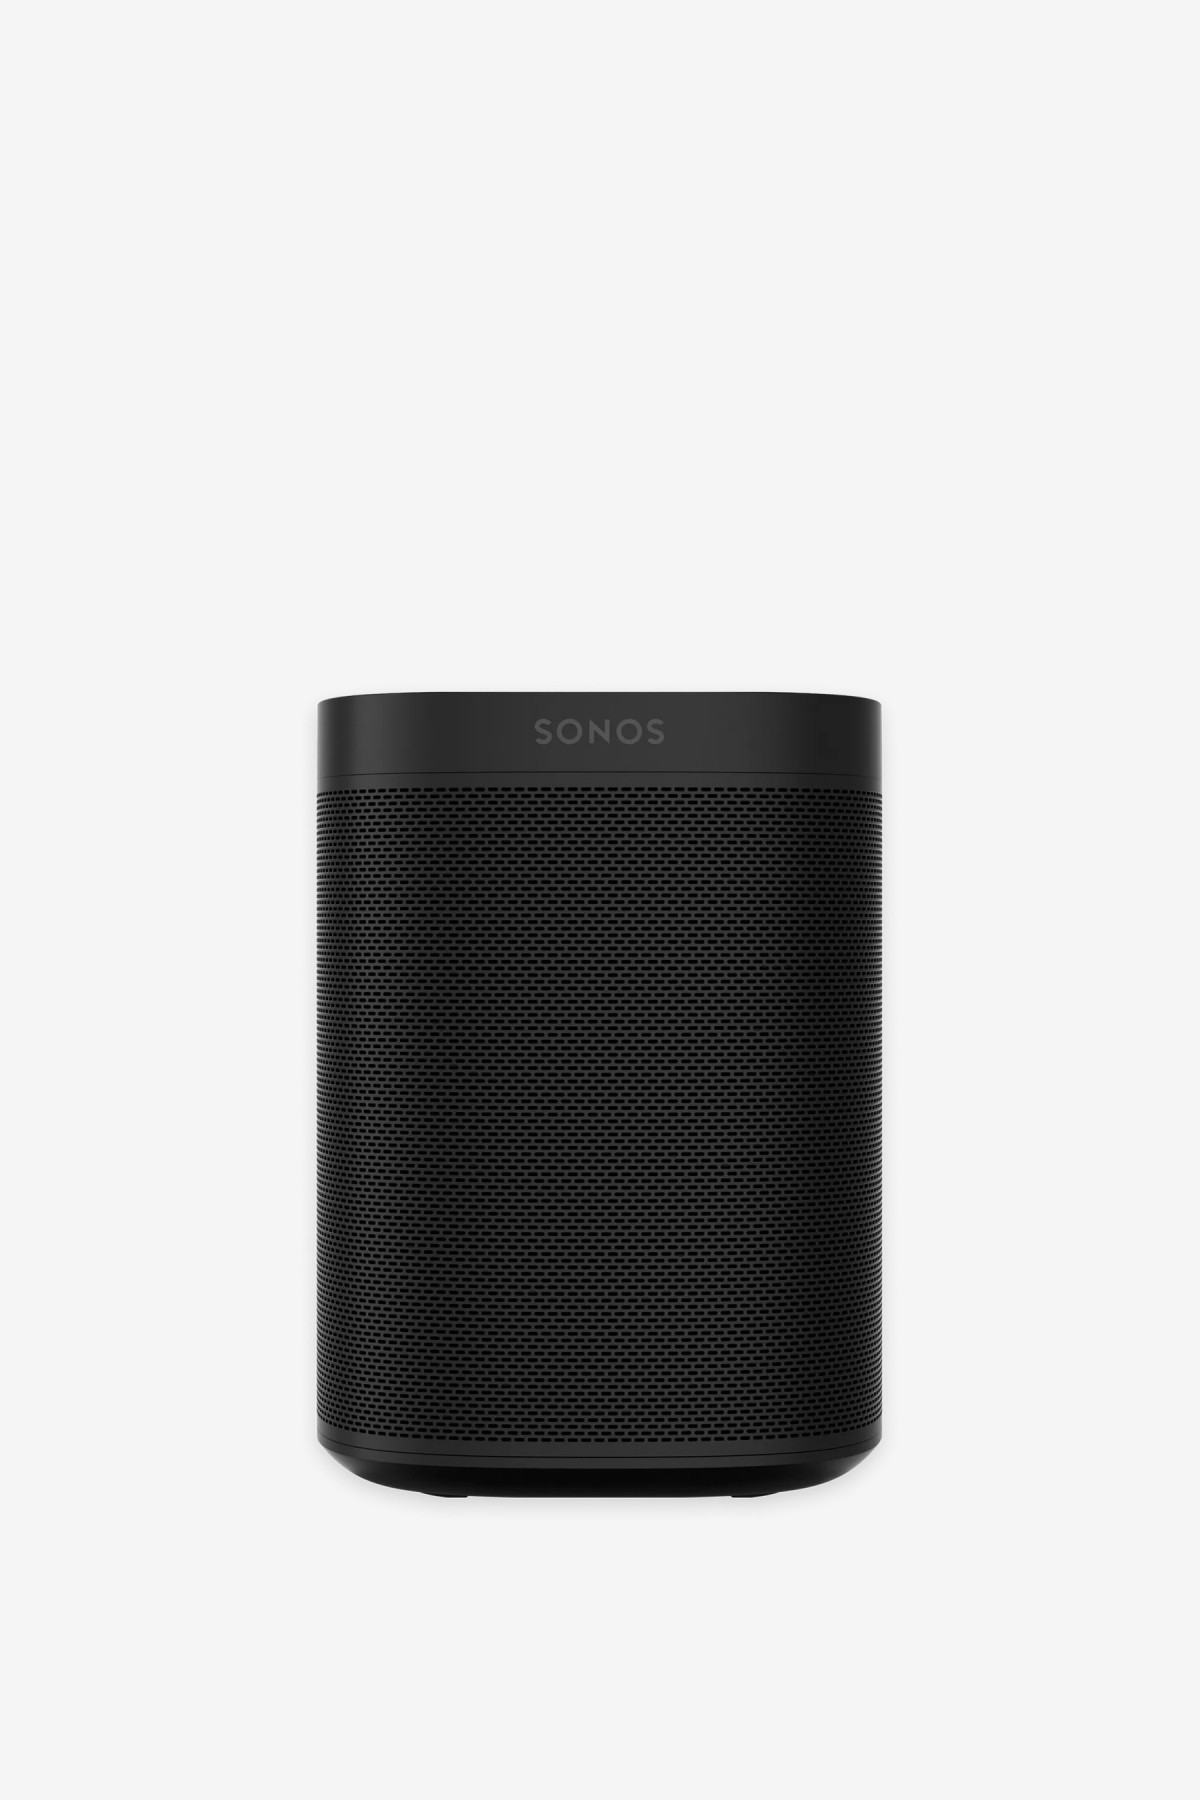 Sonos One (2nd Gen) in Black